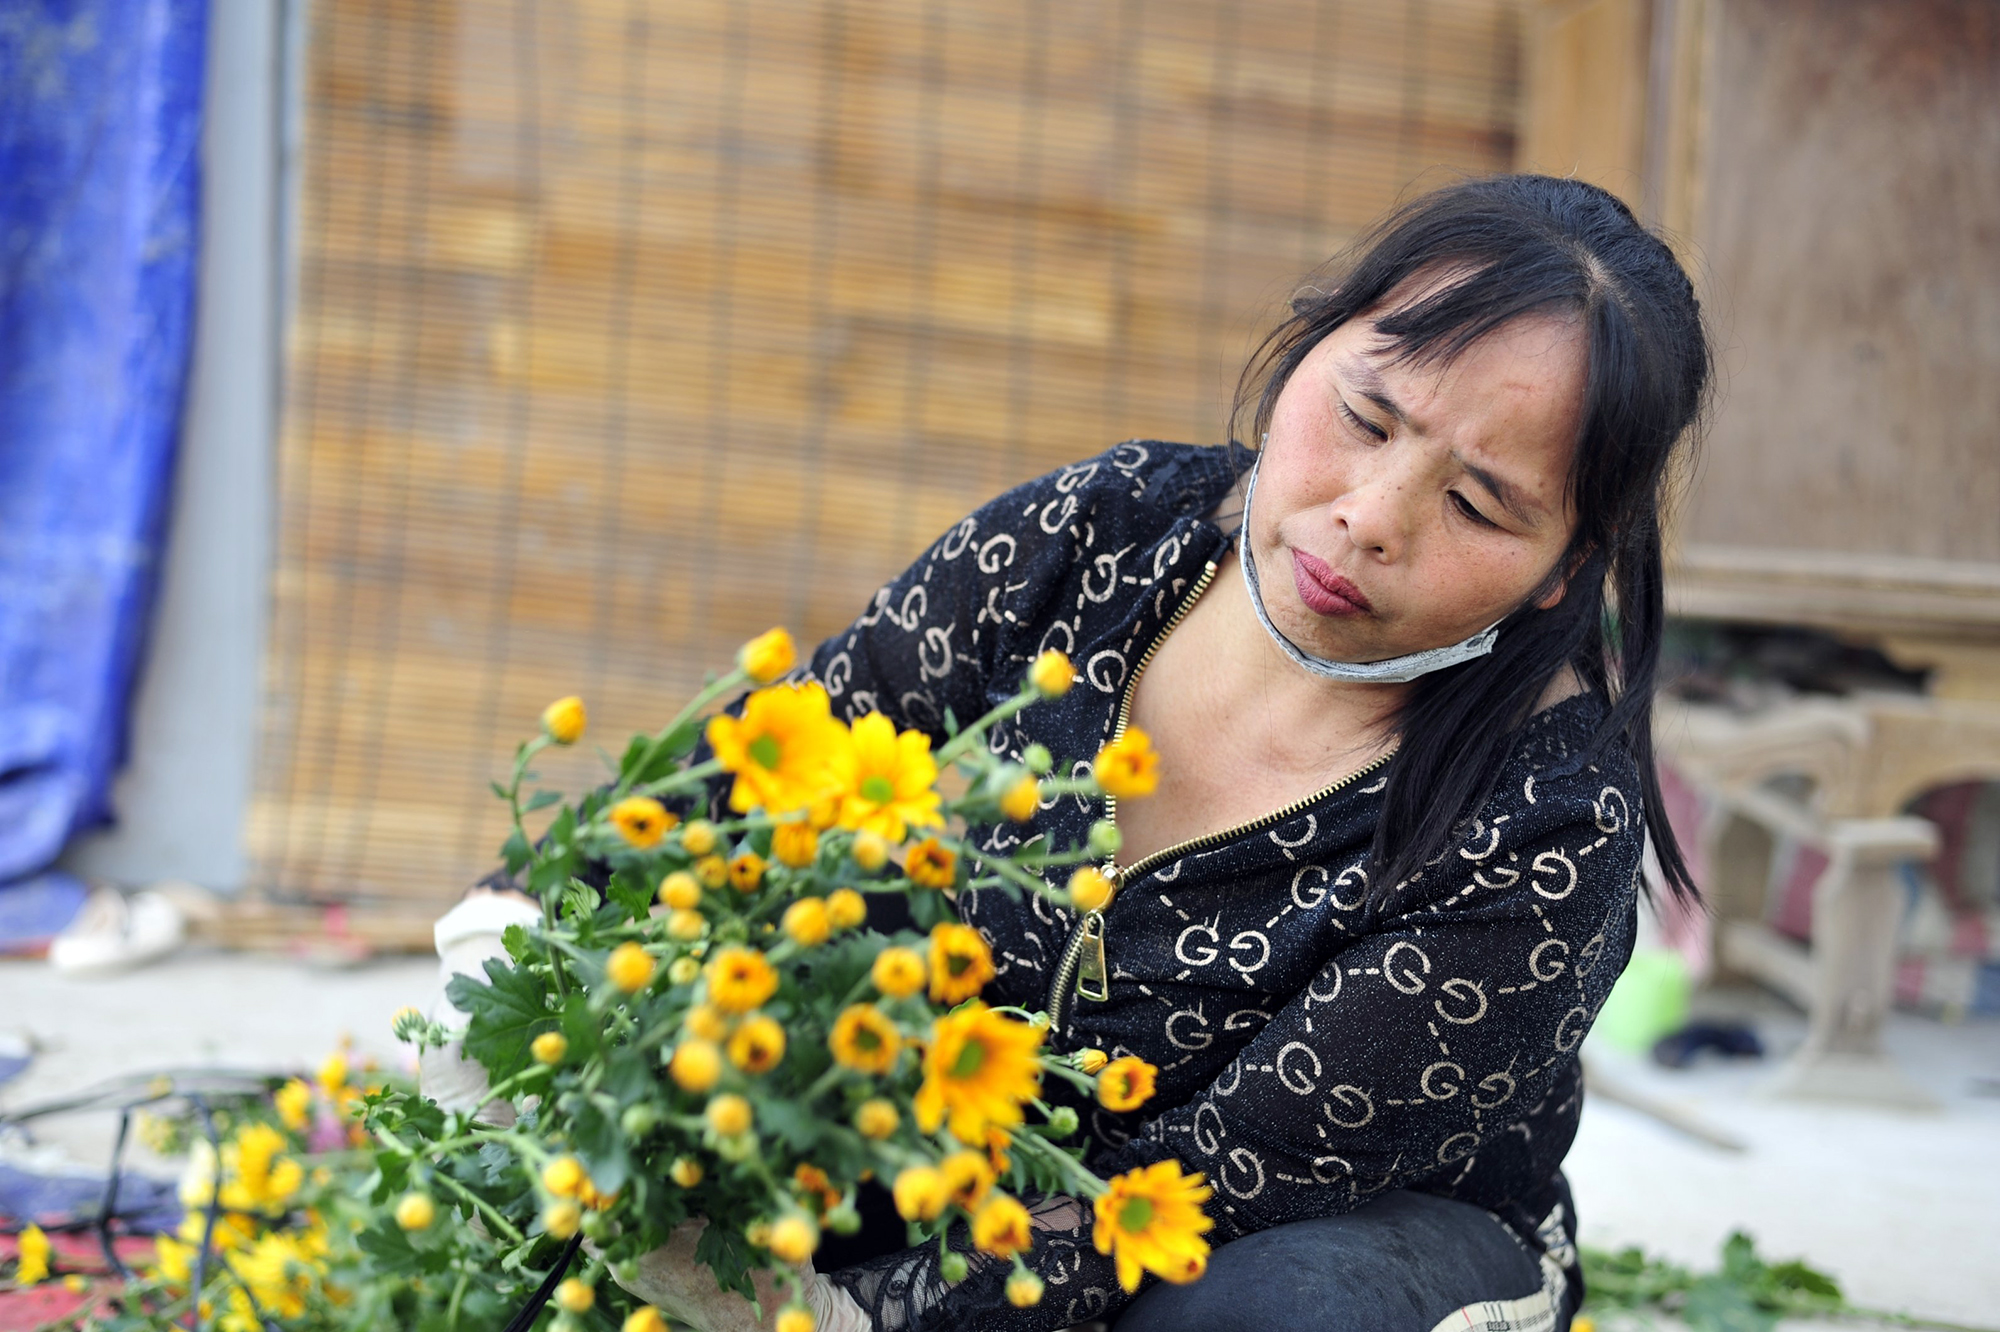 Hoa nở “lệch múi giờ”, nông dân Hà Nội thu hoạch sớm để bảo quản lạnh, chờ phục vụ người chơi đúng dịp Tết - Ảnh 5.